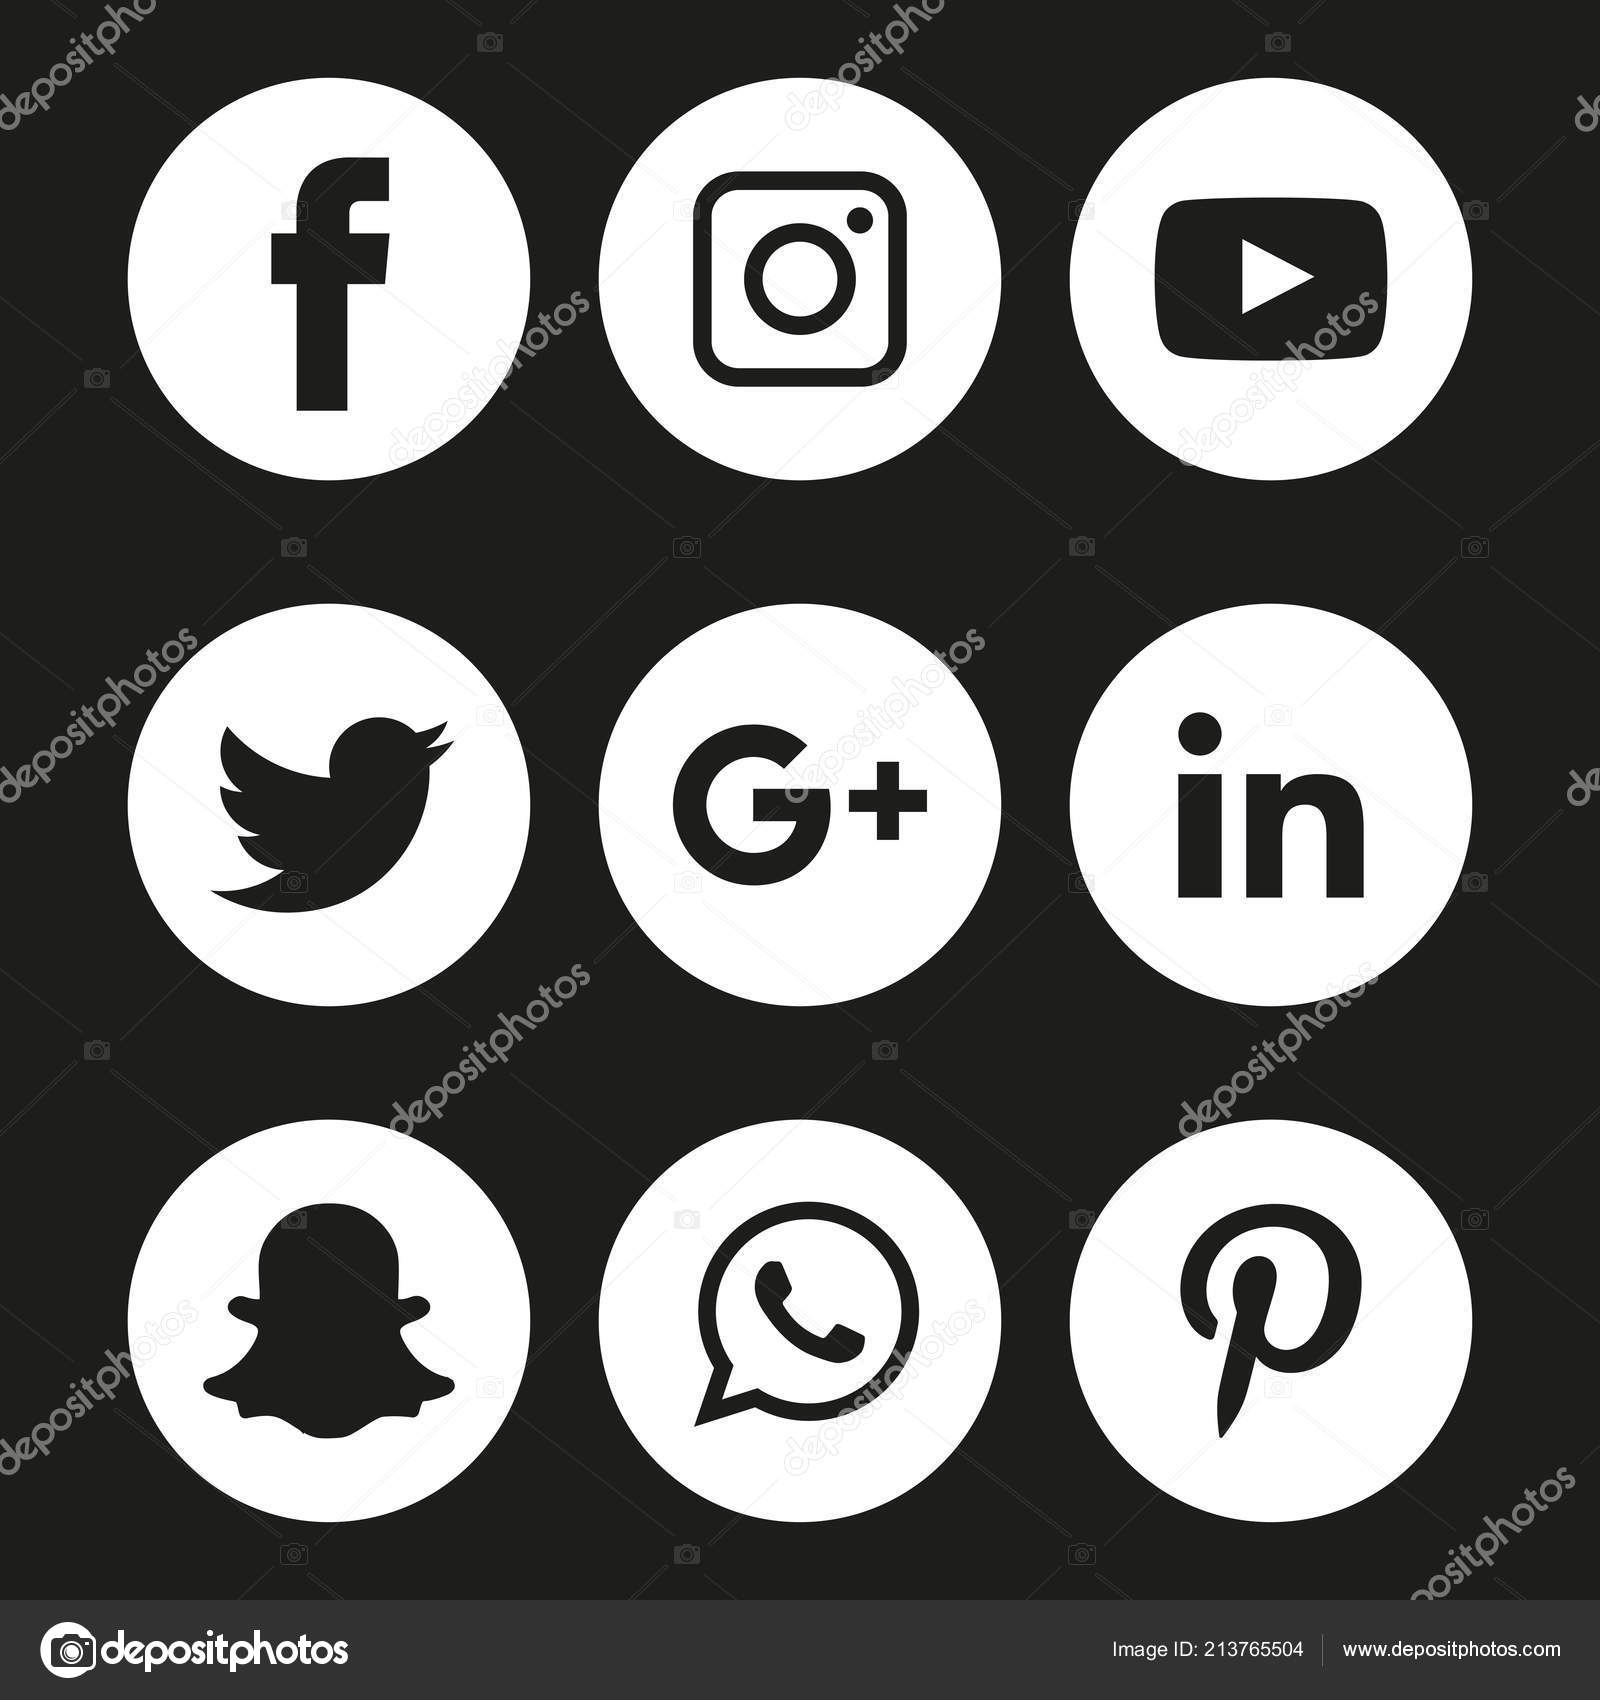 Images Facebook Logo Black And White Black White Social Media